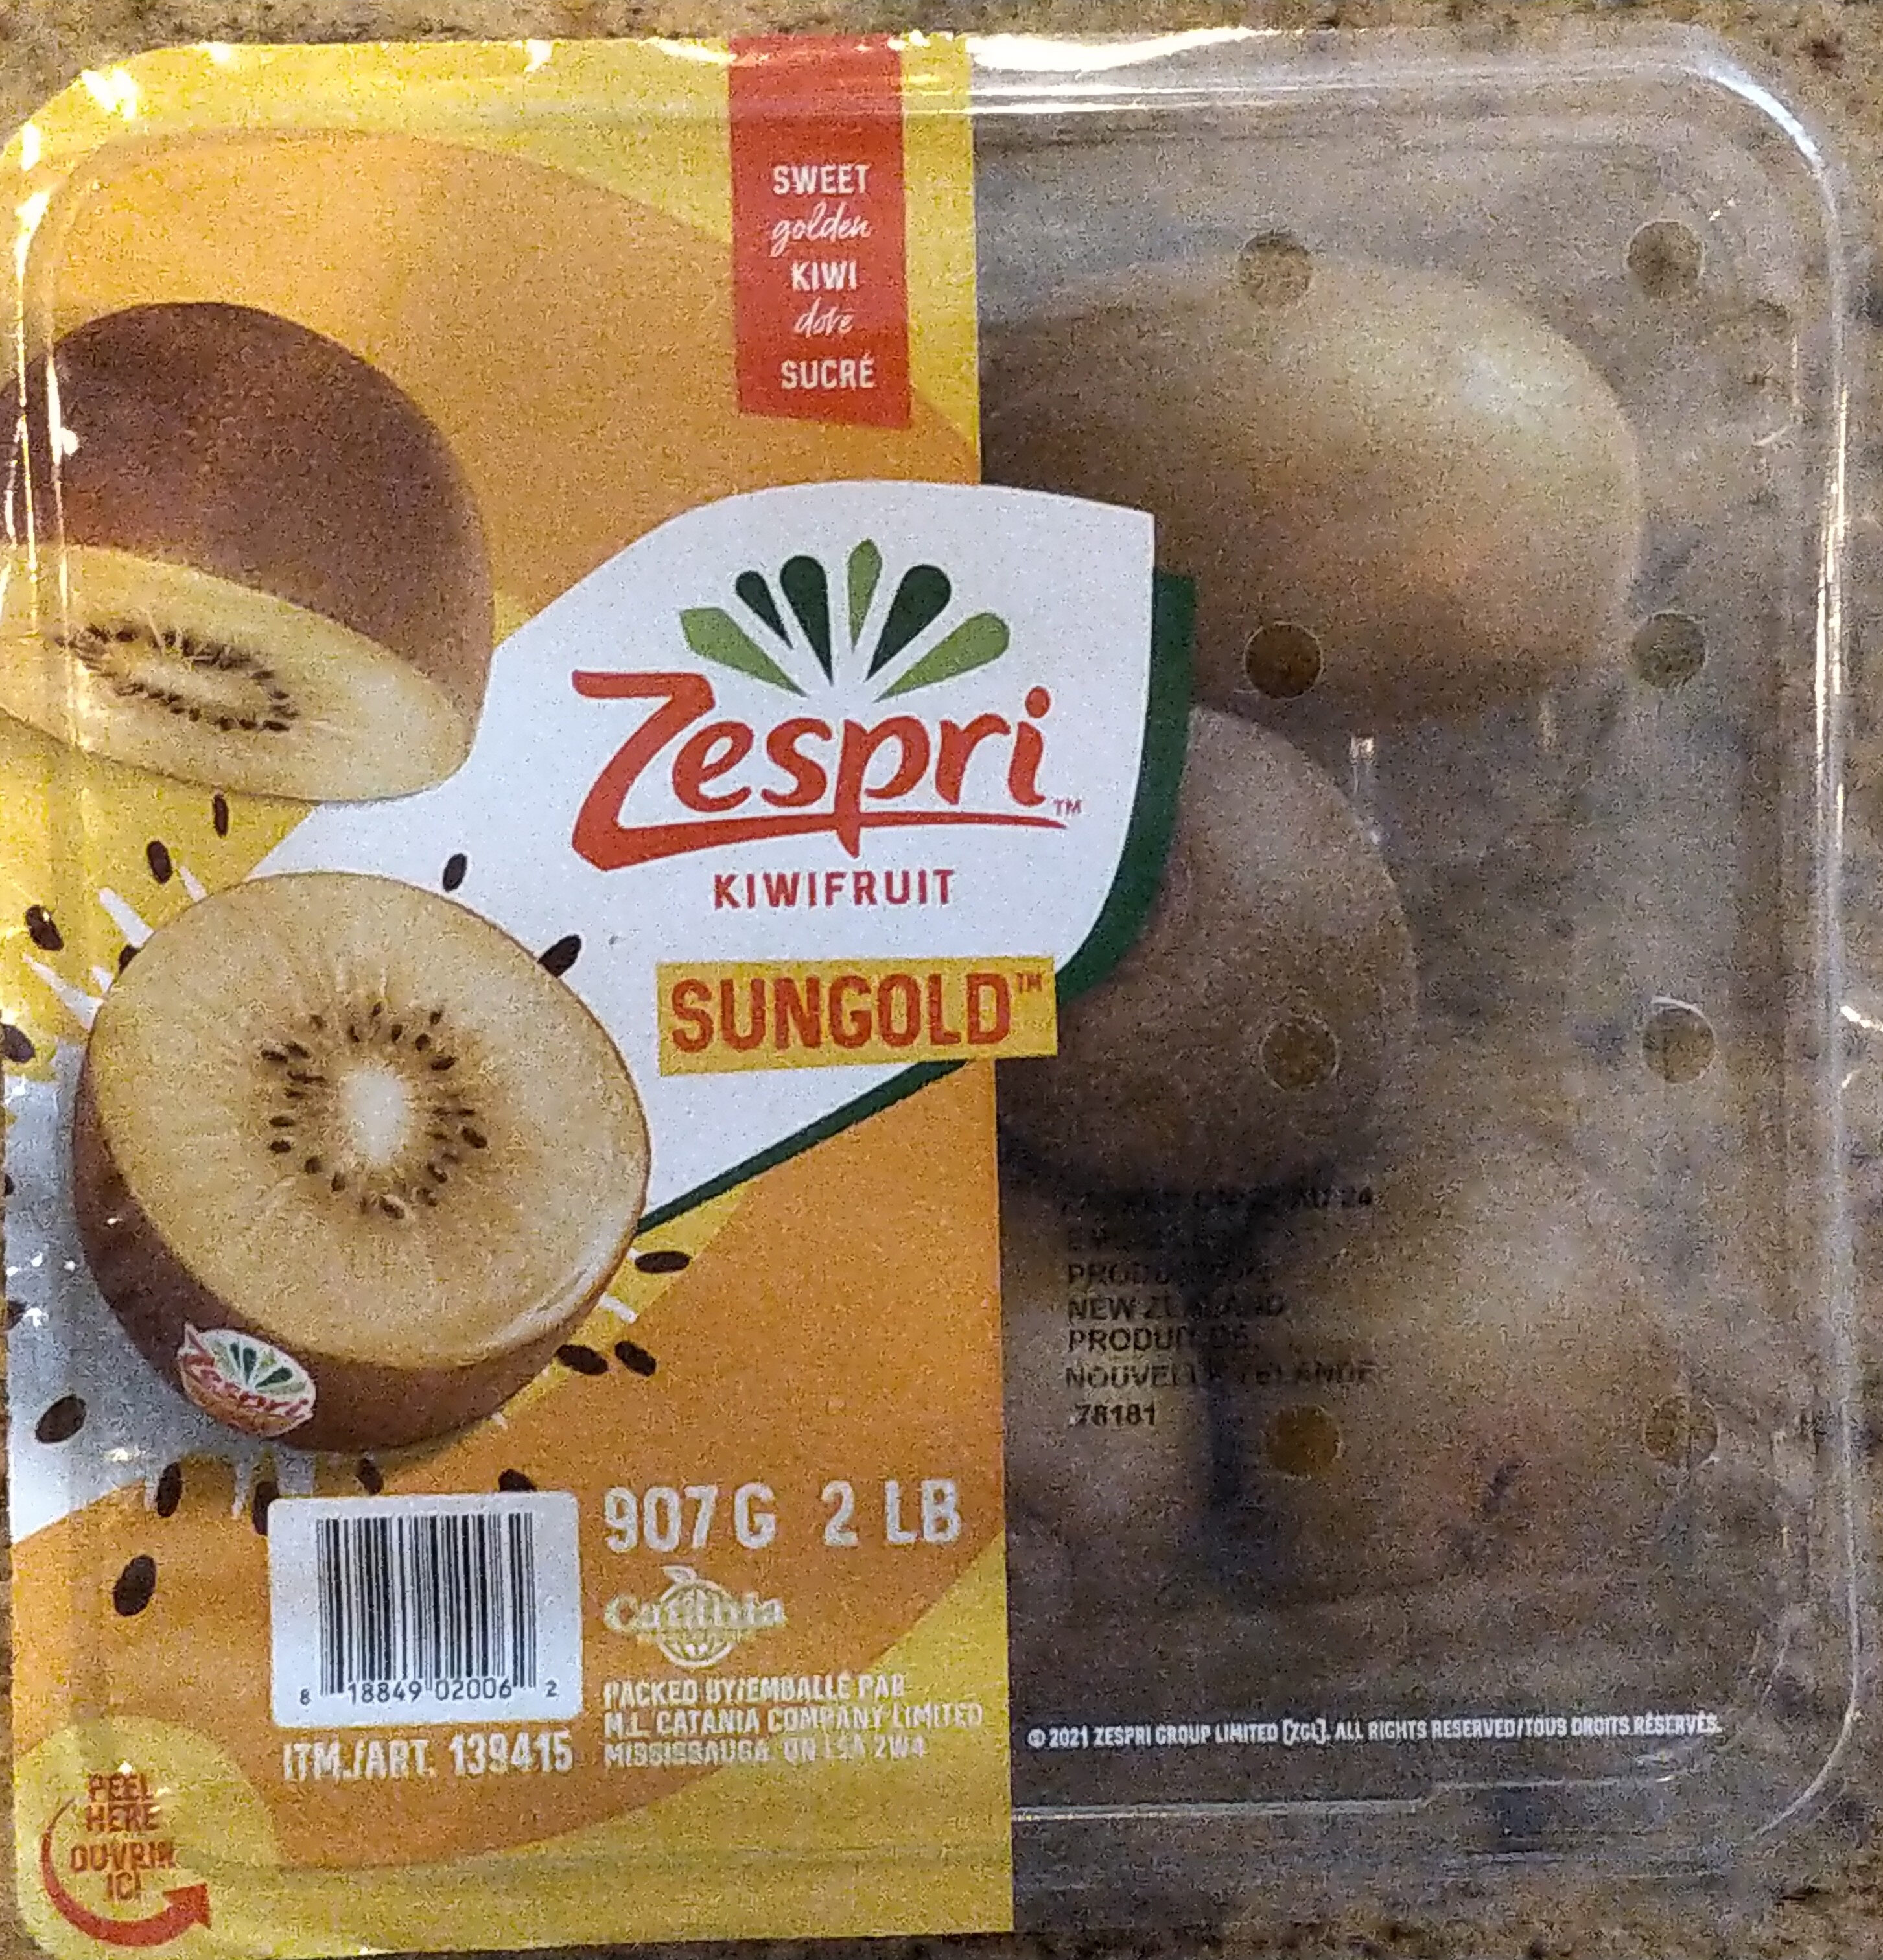 Sweet Golden Kiwifruit - Product